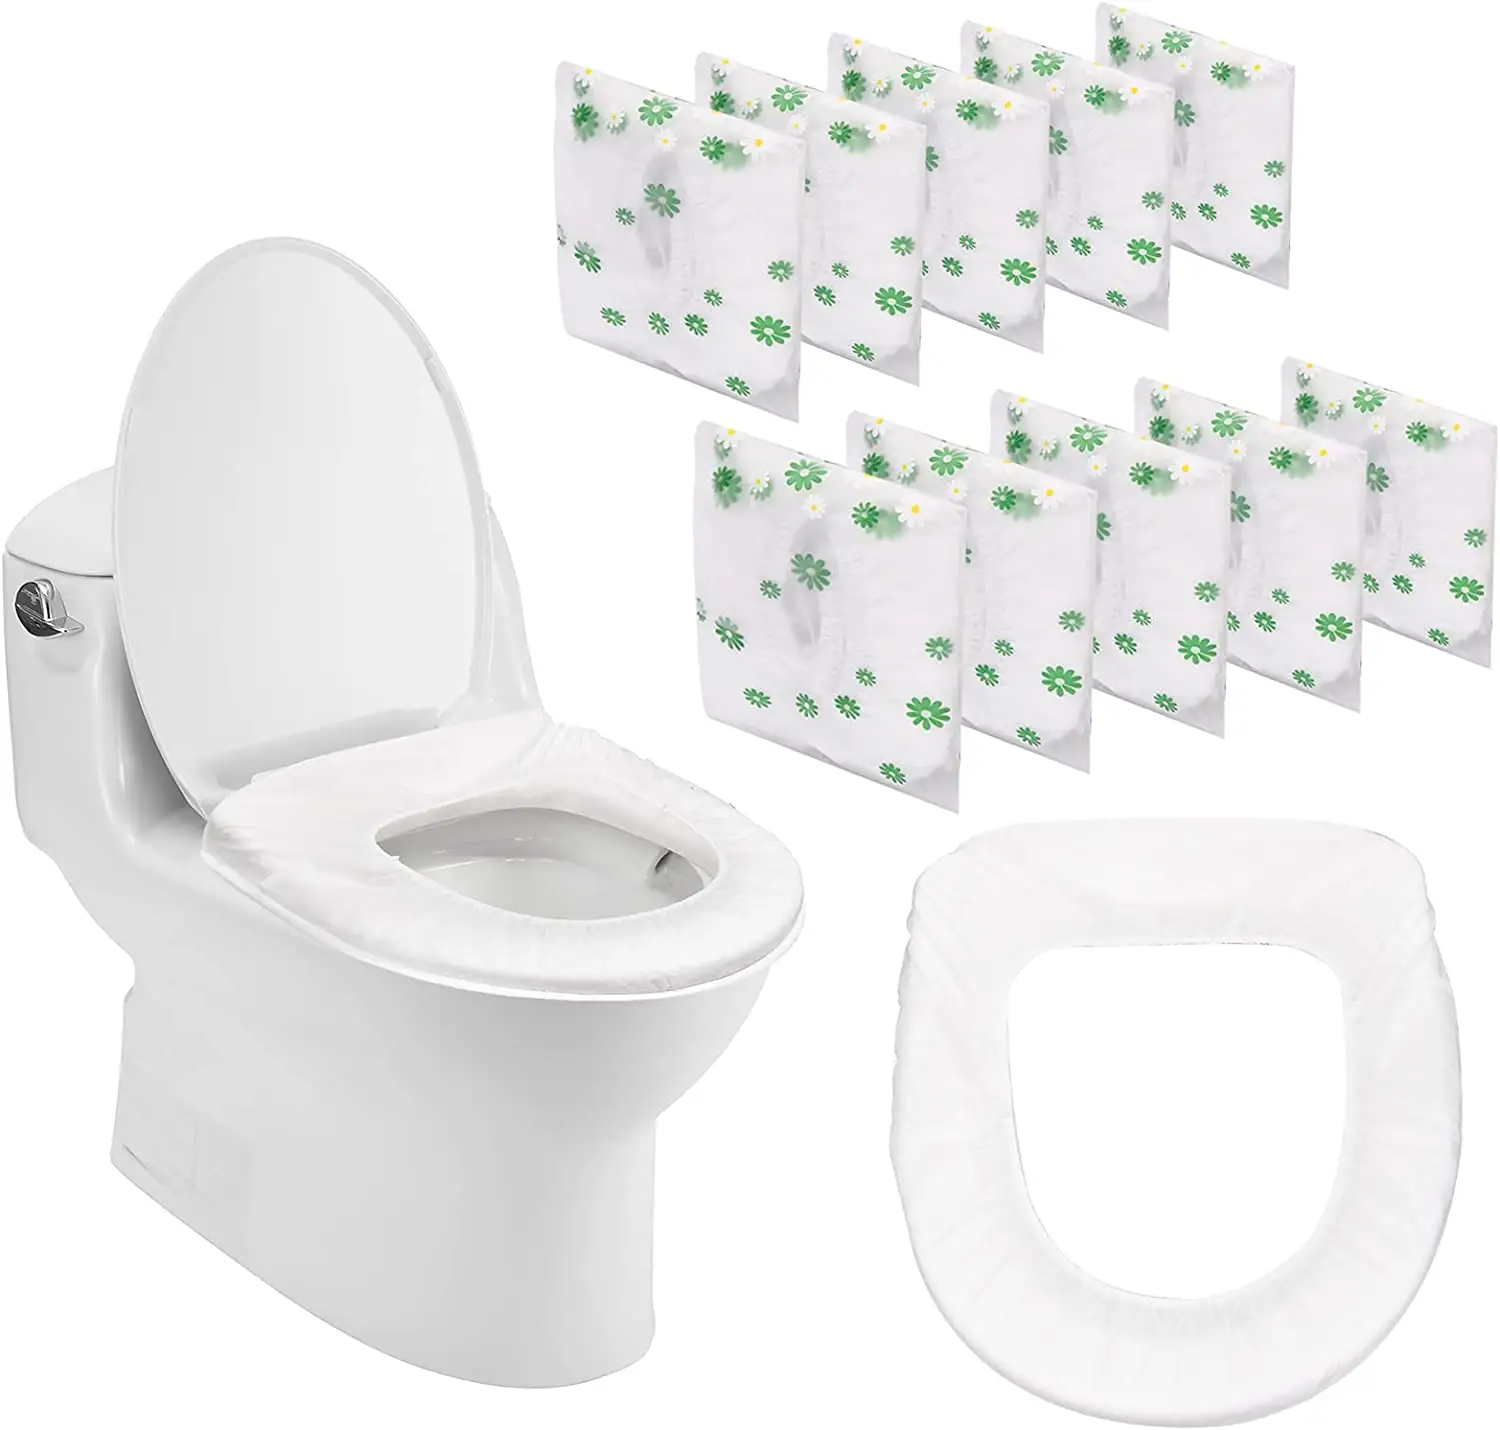 Emballage individuel housse de siège de toilette Portable avion voyage accessoires pour toilettes publiques hôtel Camping enfants adultes pot Train